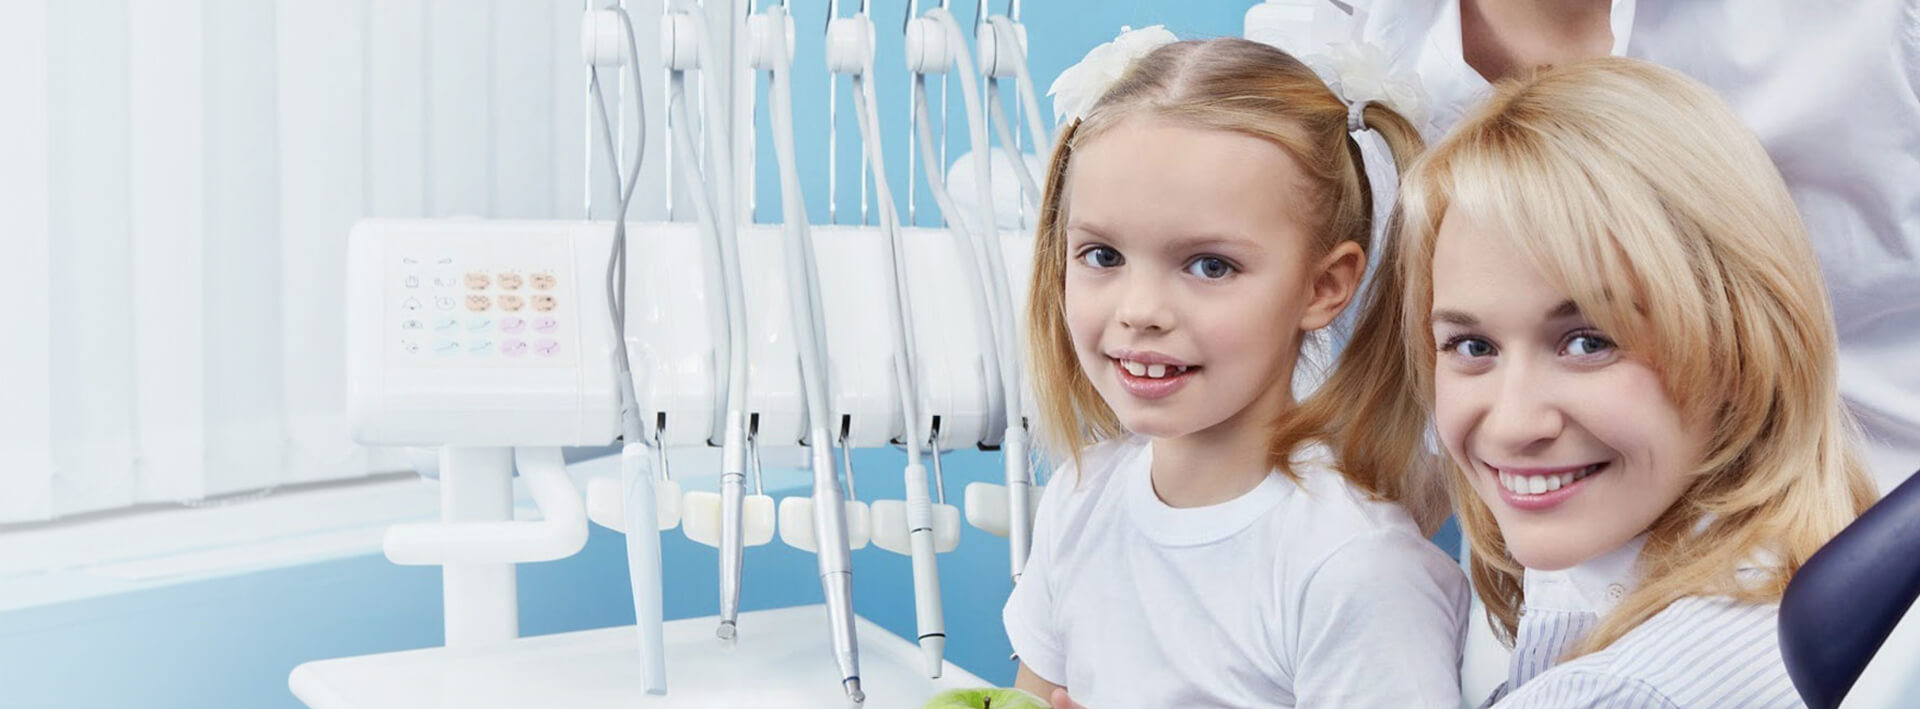 Детская стоматология бесплатно томск нет переднего зуба как скрыть